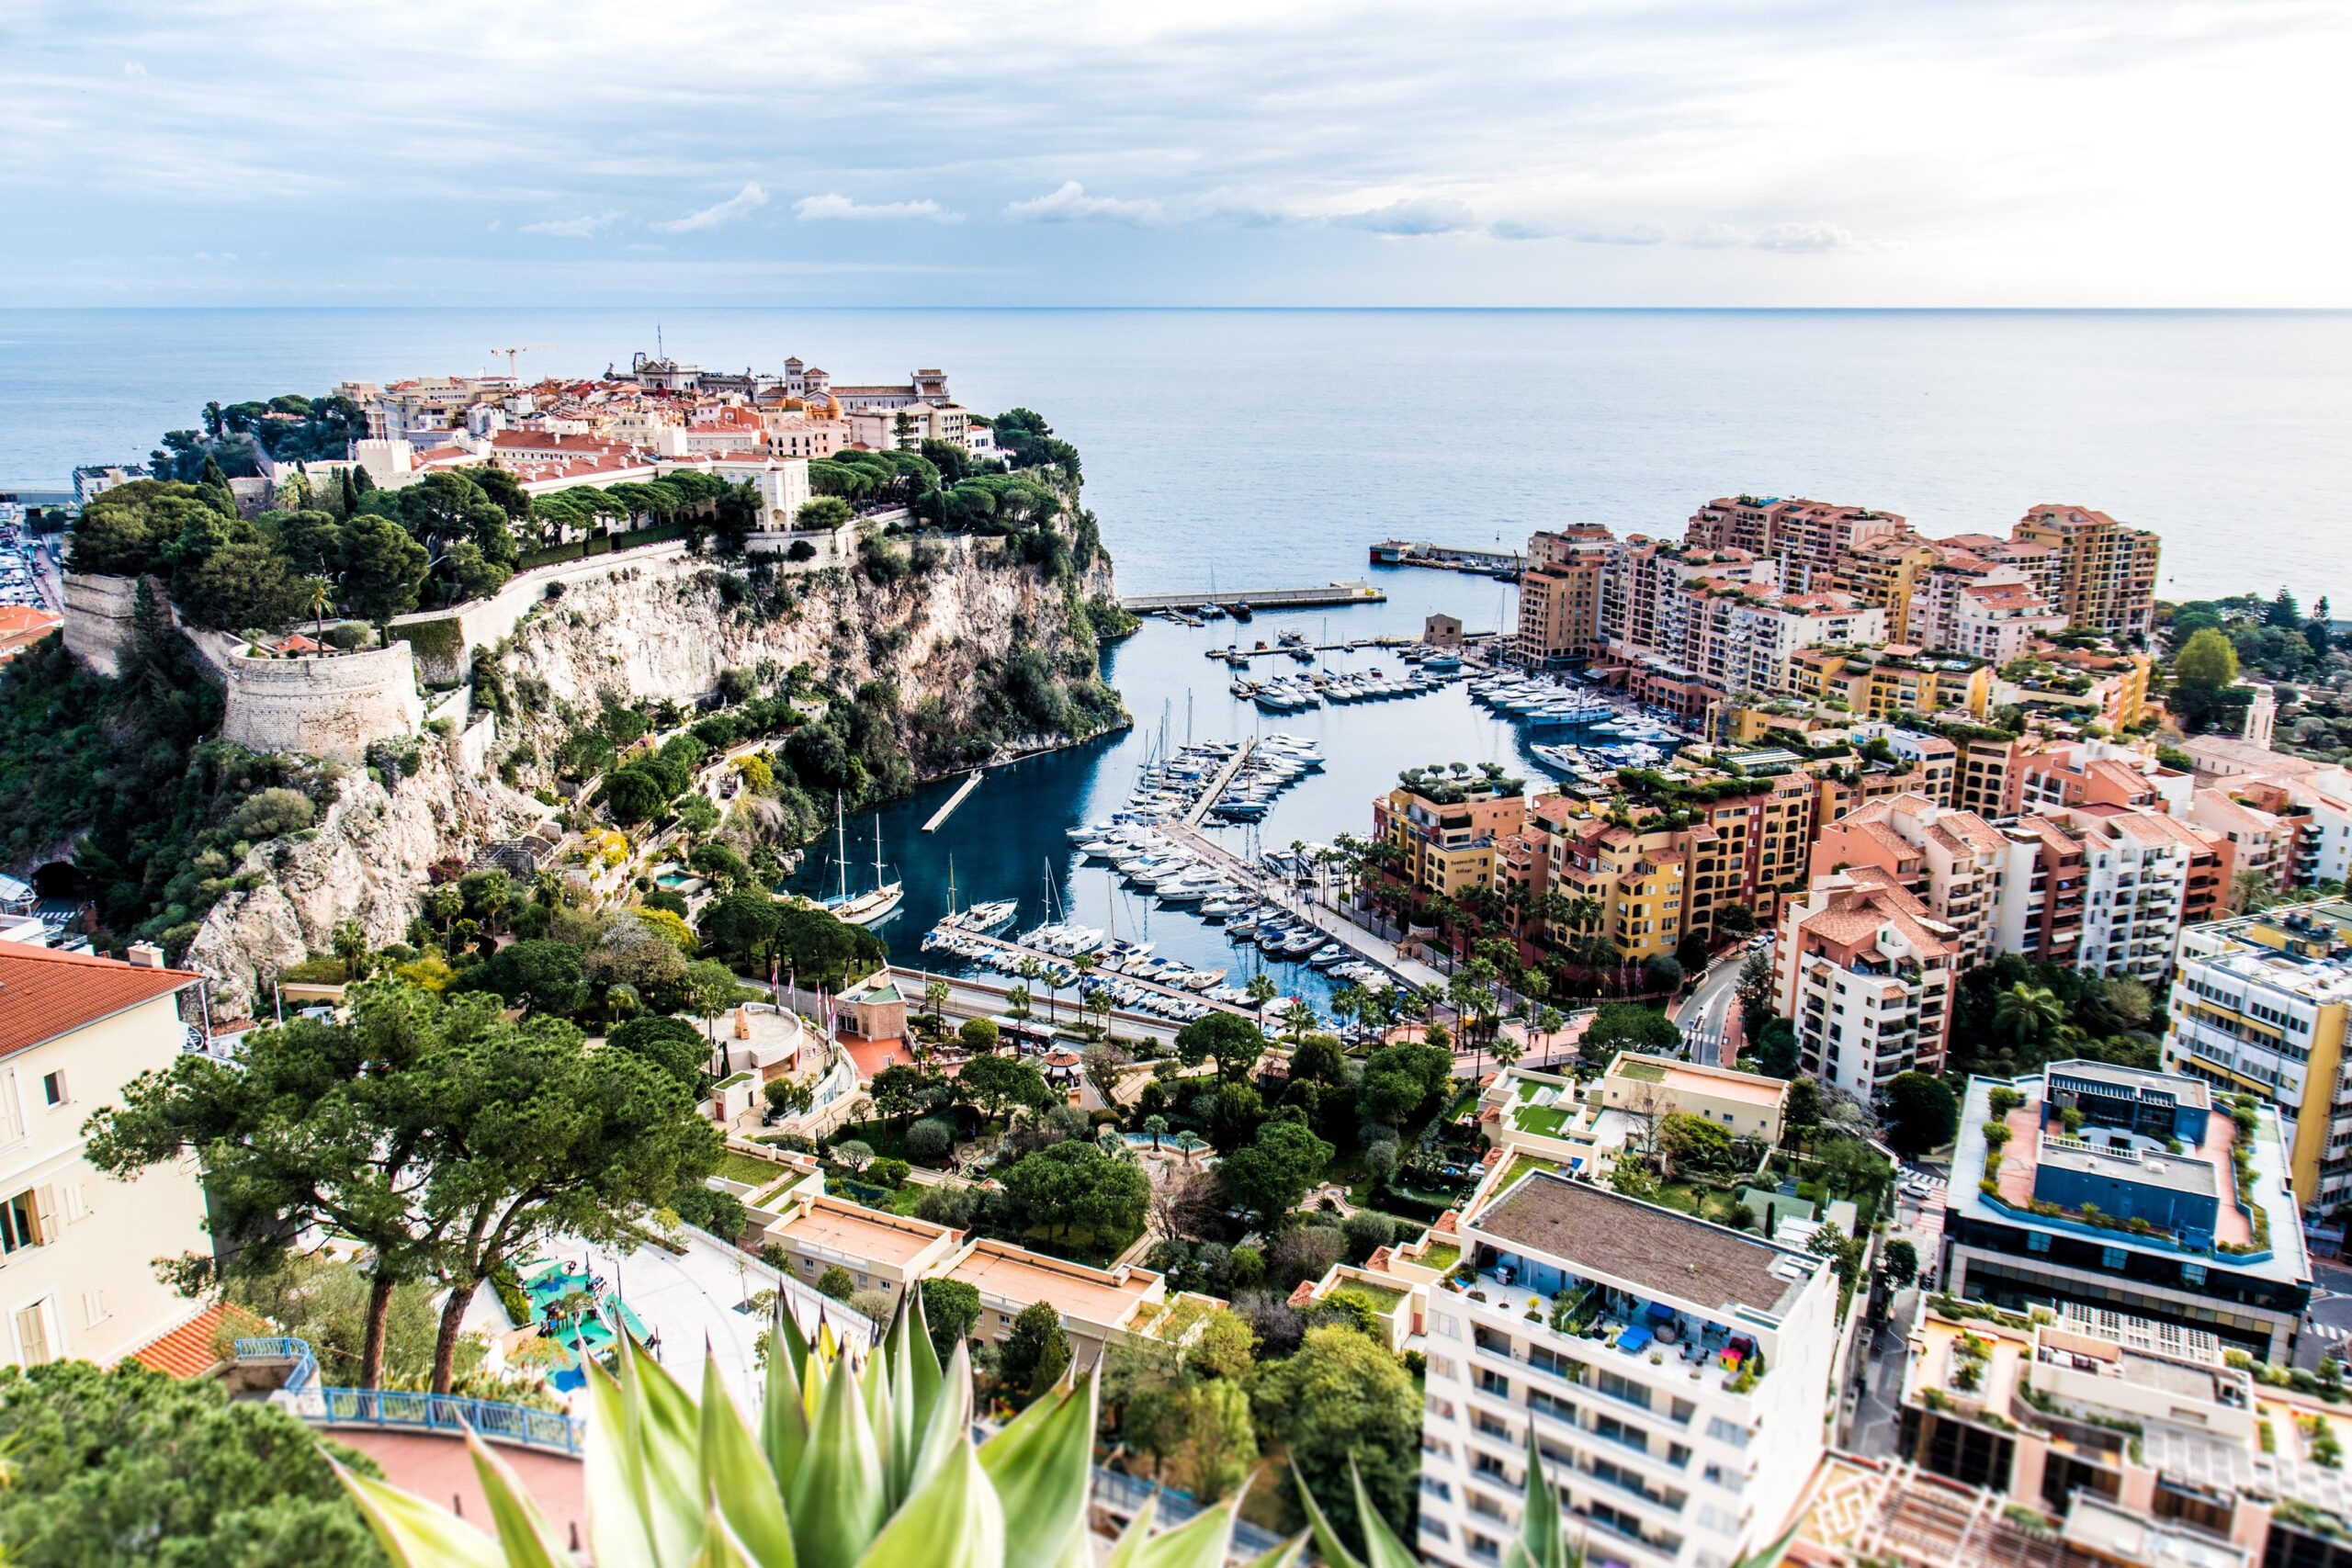 overlooking the bay of Monaco